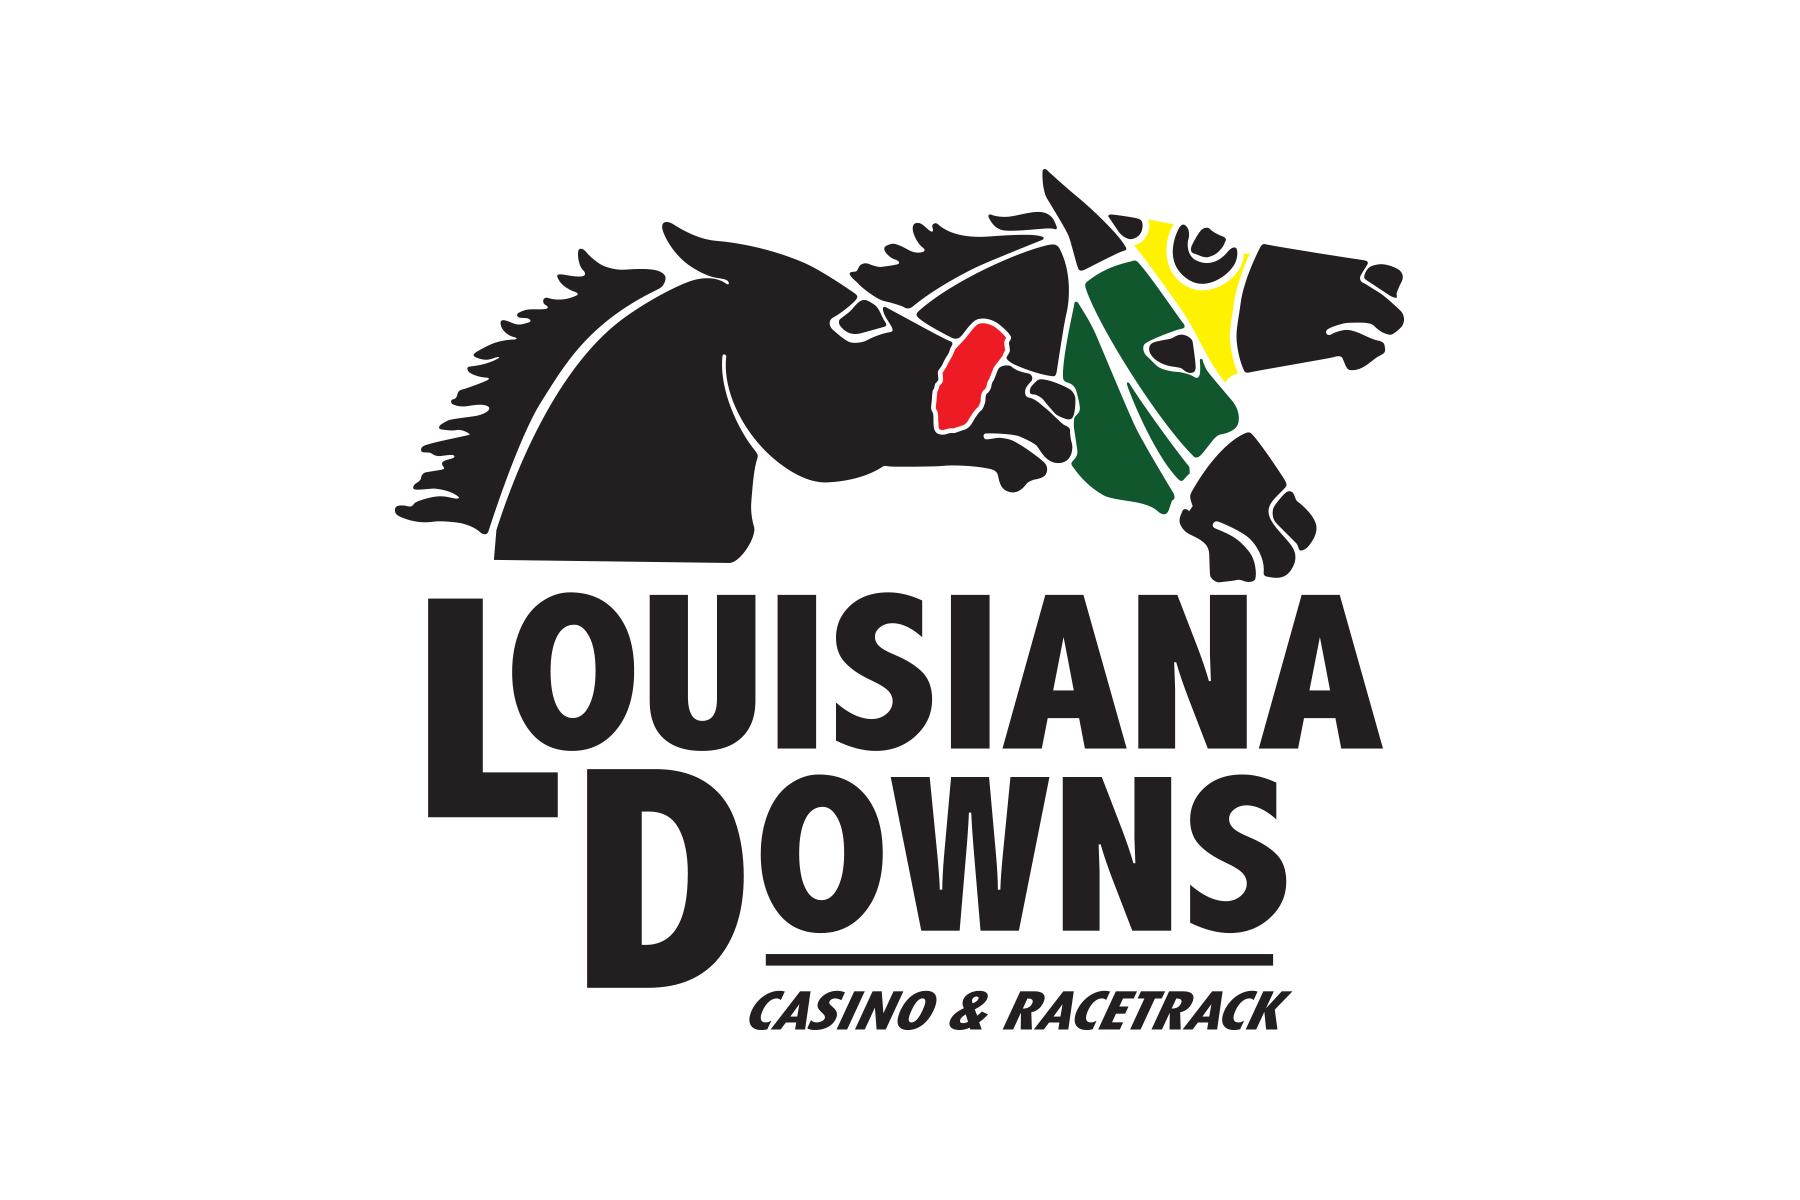 Louisiana Downs Casino & Racetrack